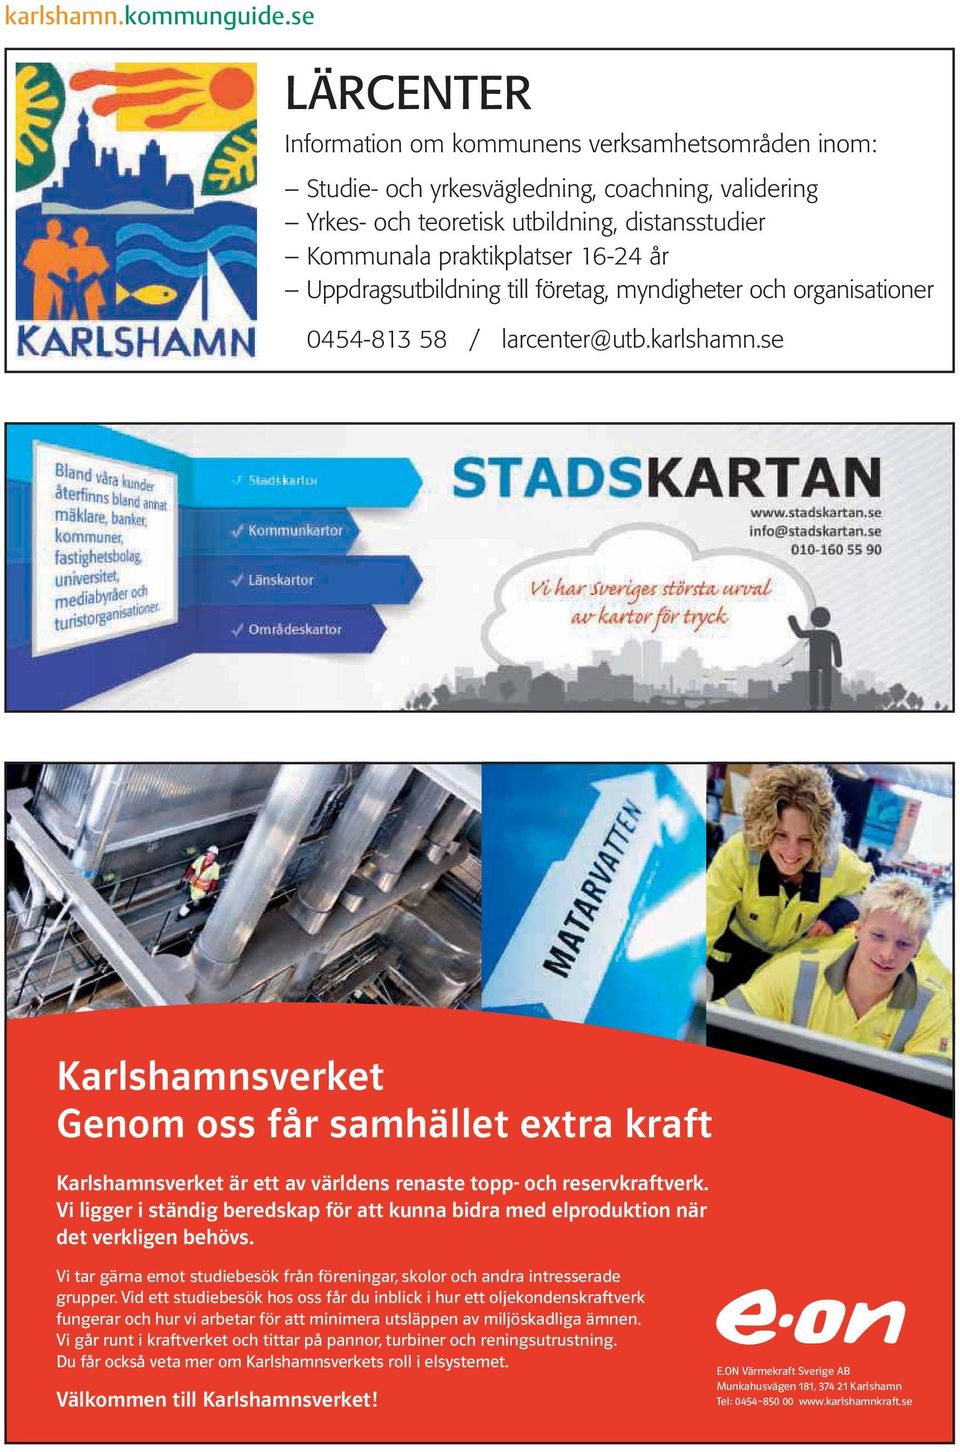 se Karlshamnsverket Genom oss får samhället extra kraft Karlshamnsverket är ett av världens renaste topp- och reservkraftverk.